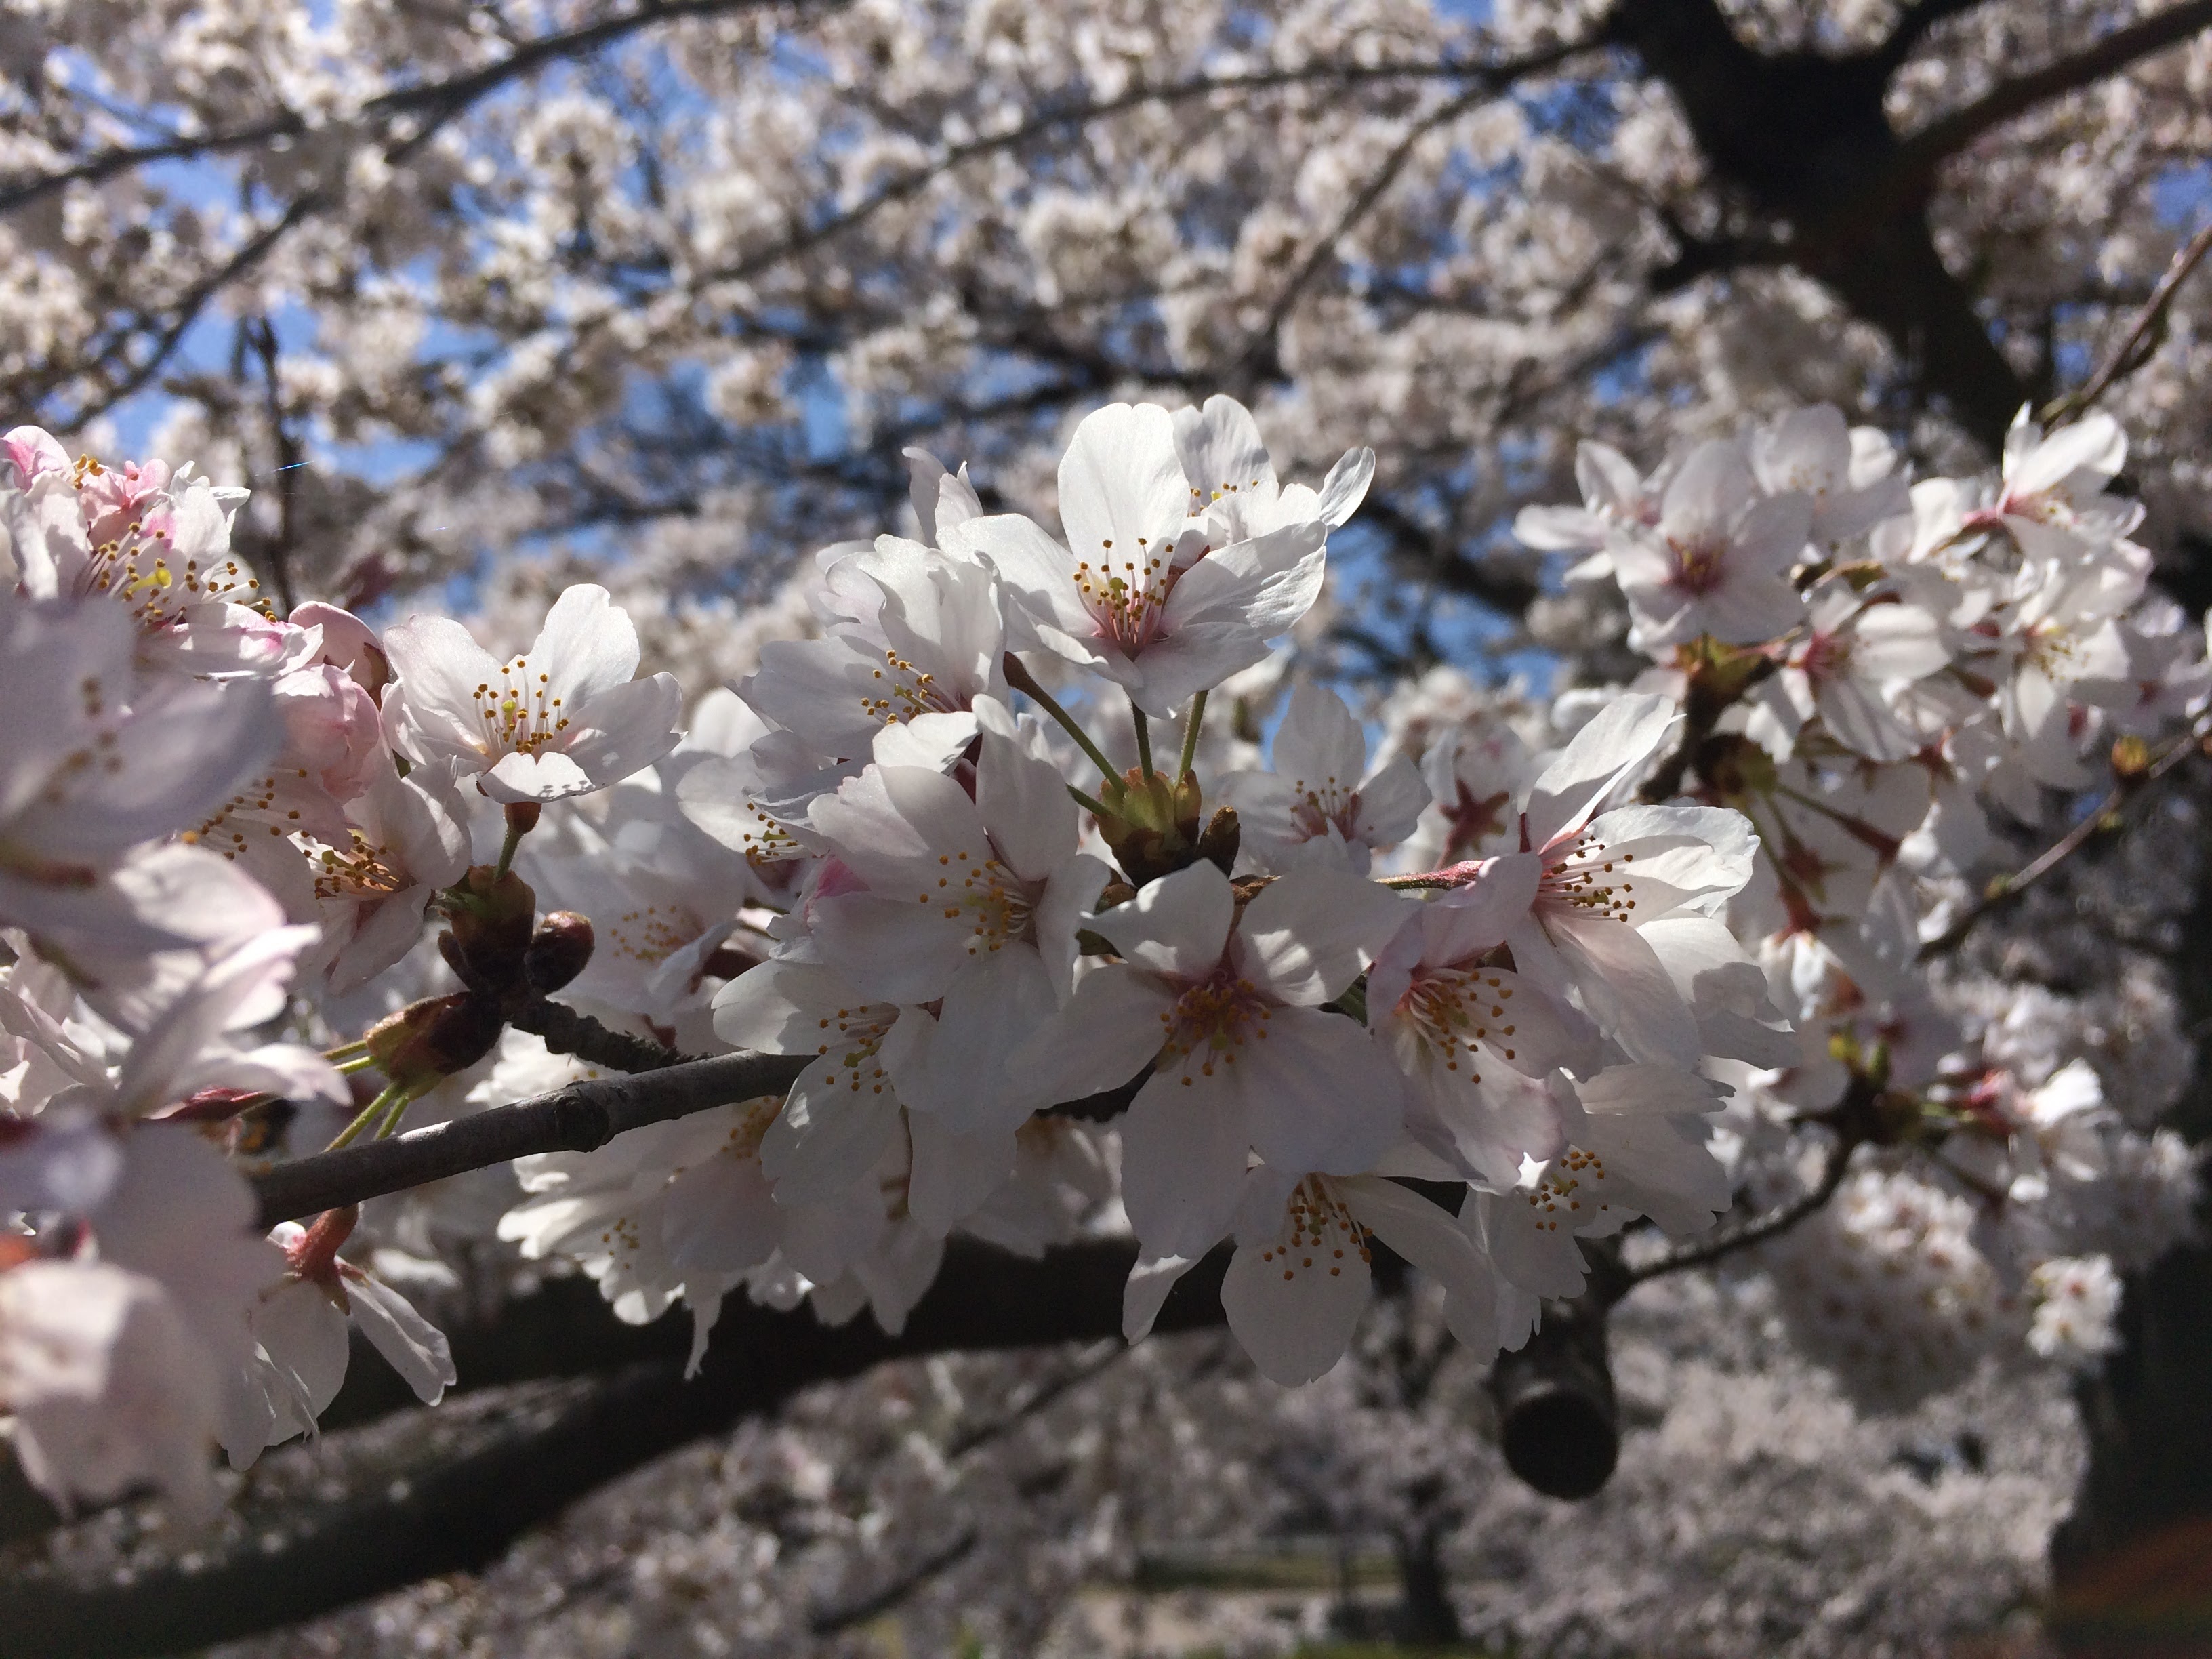 武田神社の桜